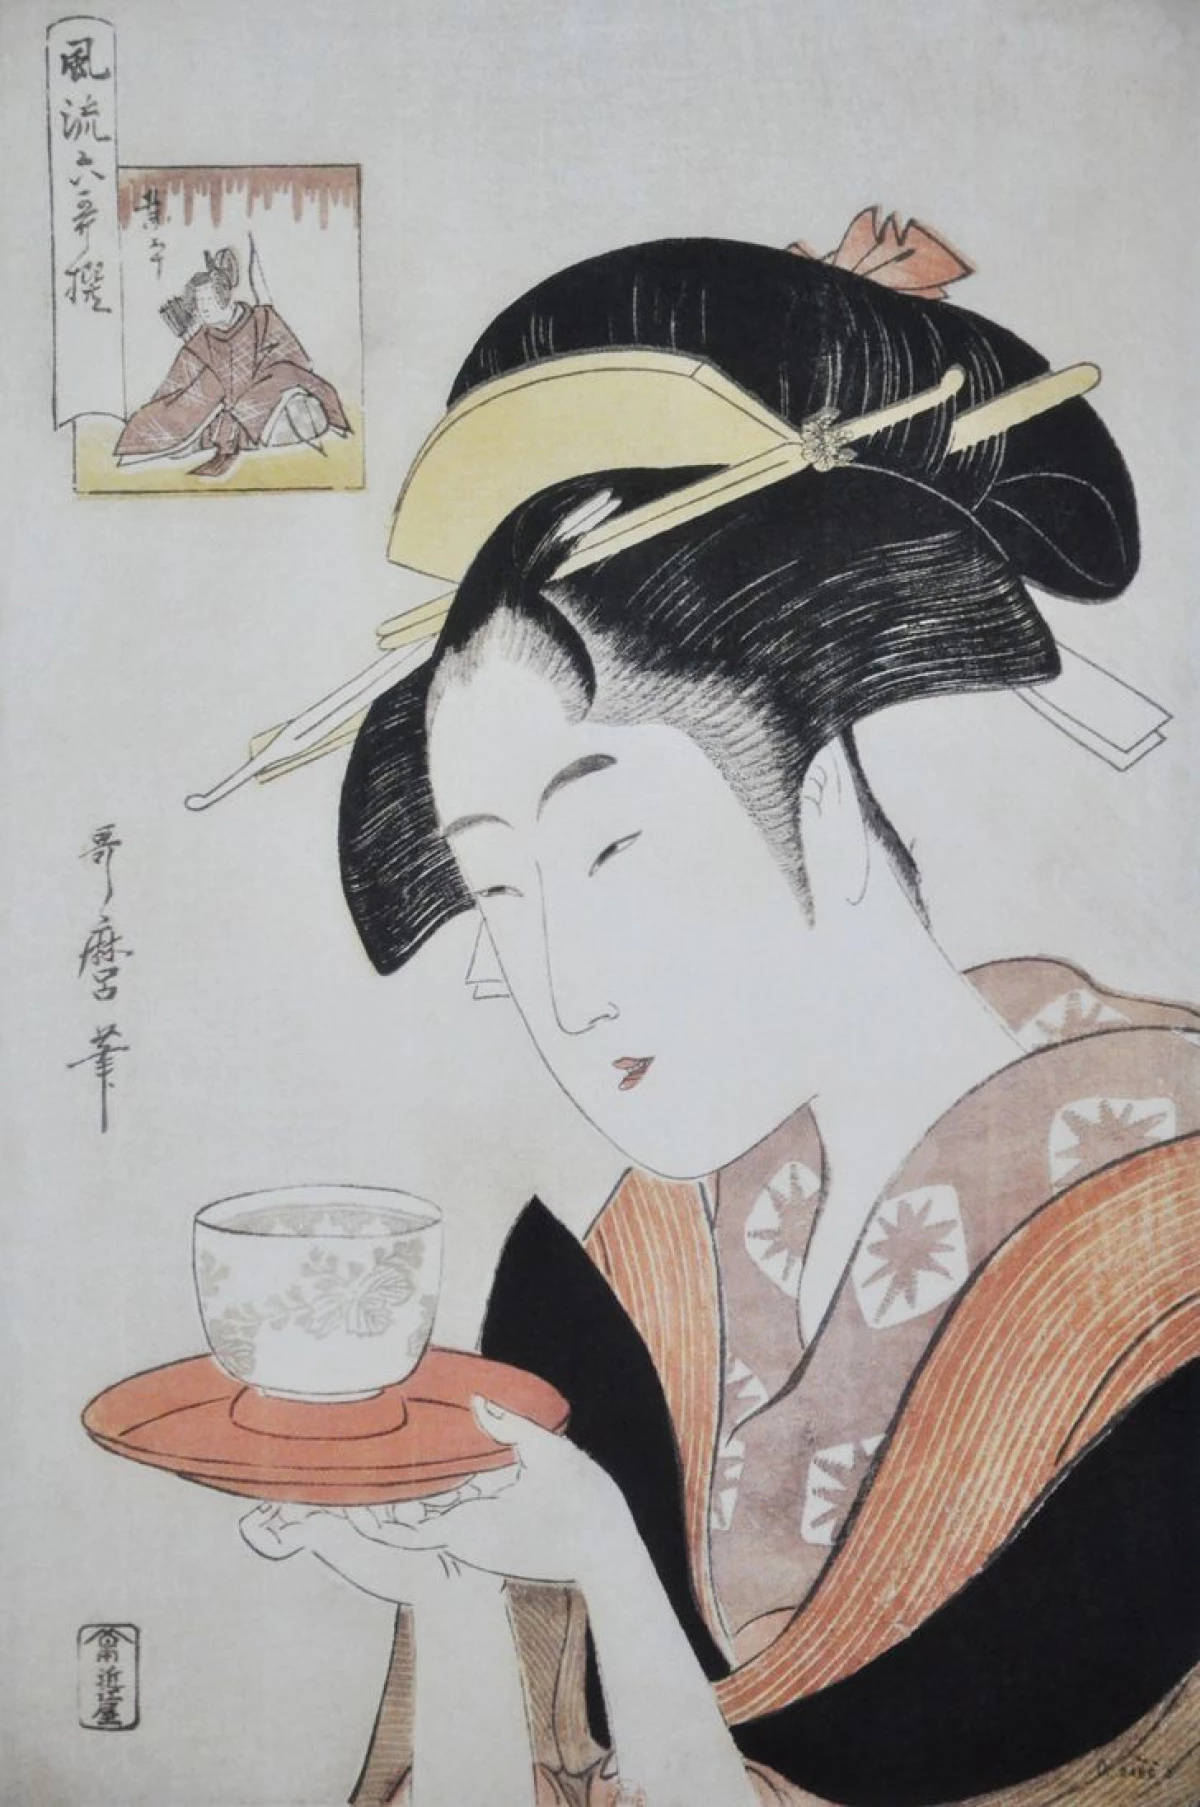 9 видів японського мистецтва, які підкорили весь світ своєю самобутністю